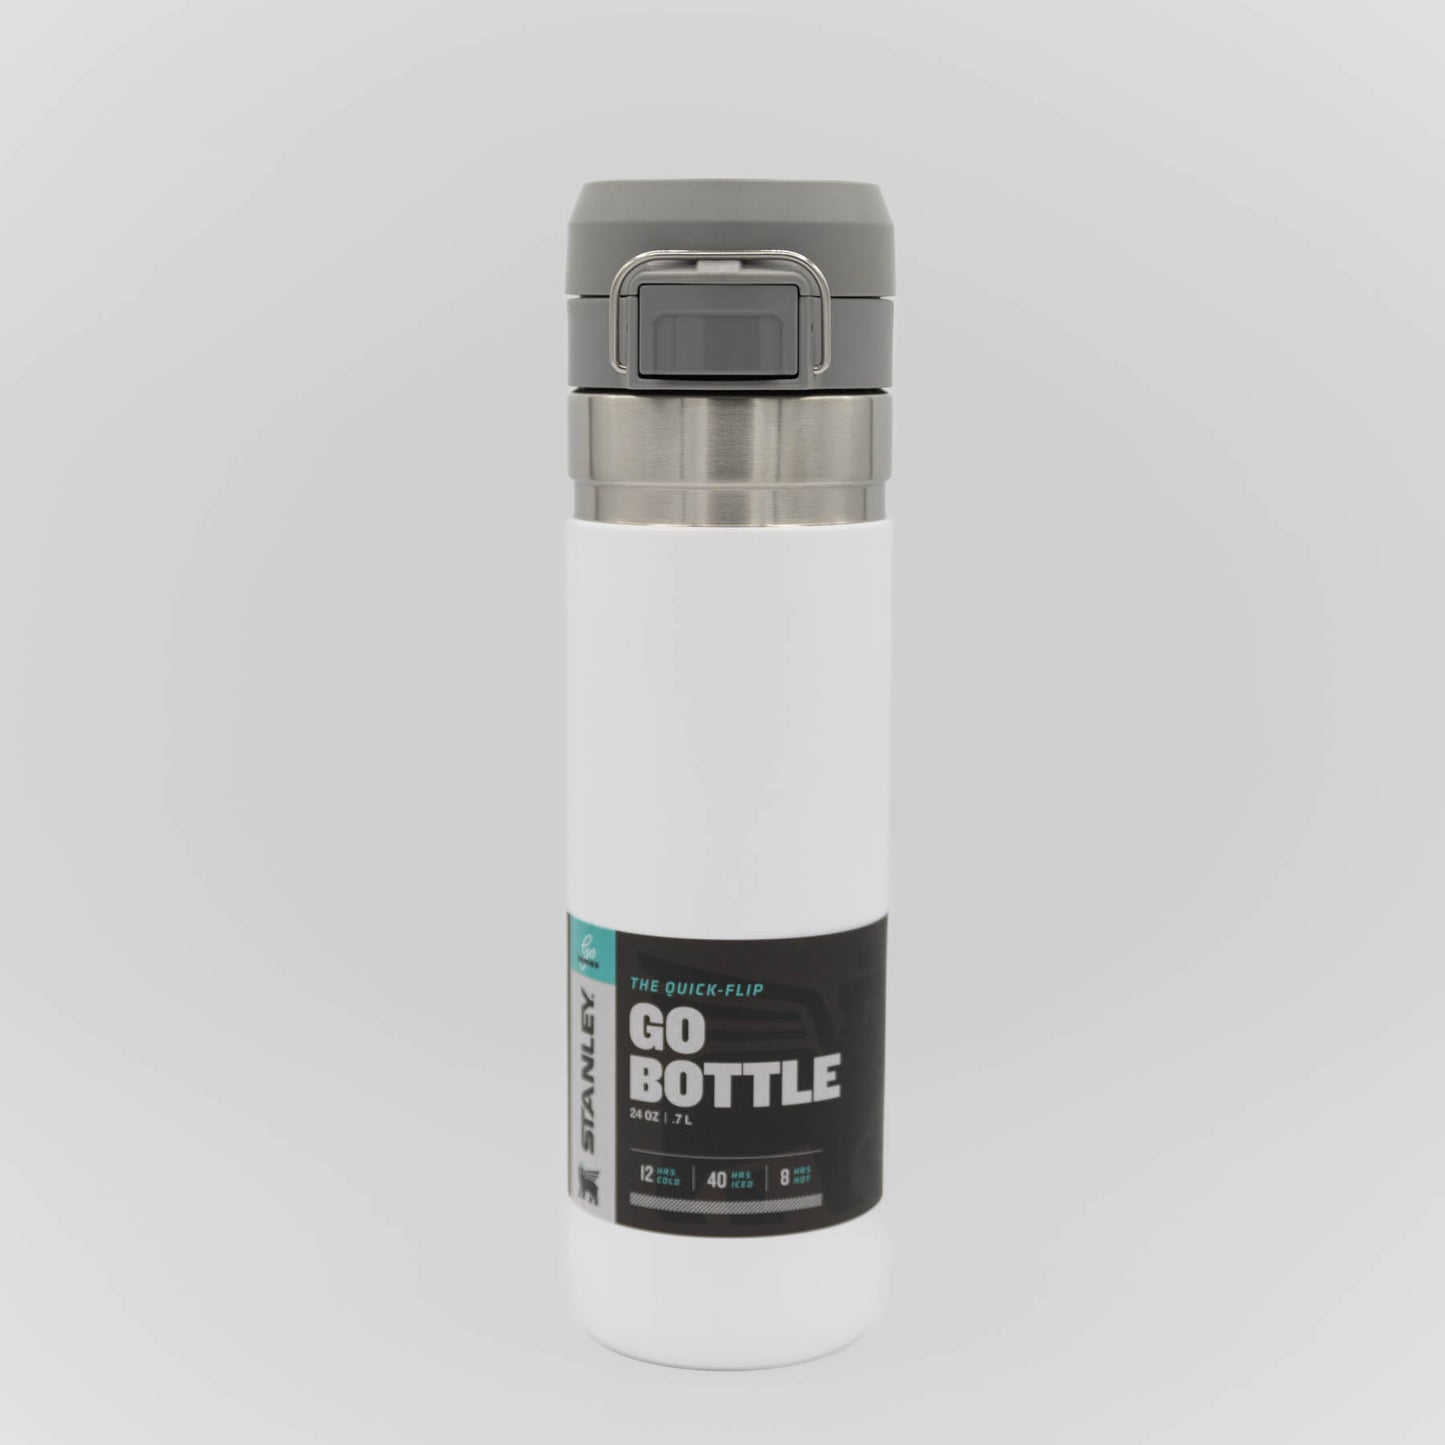 Stanley - The Quick Flip GO Bottle - Polar - 24 oz / 0.71 L